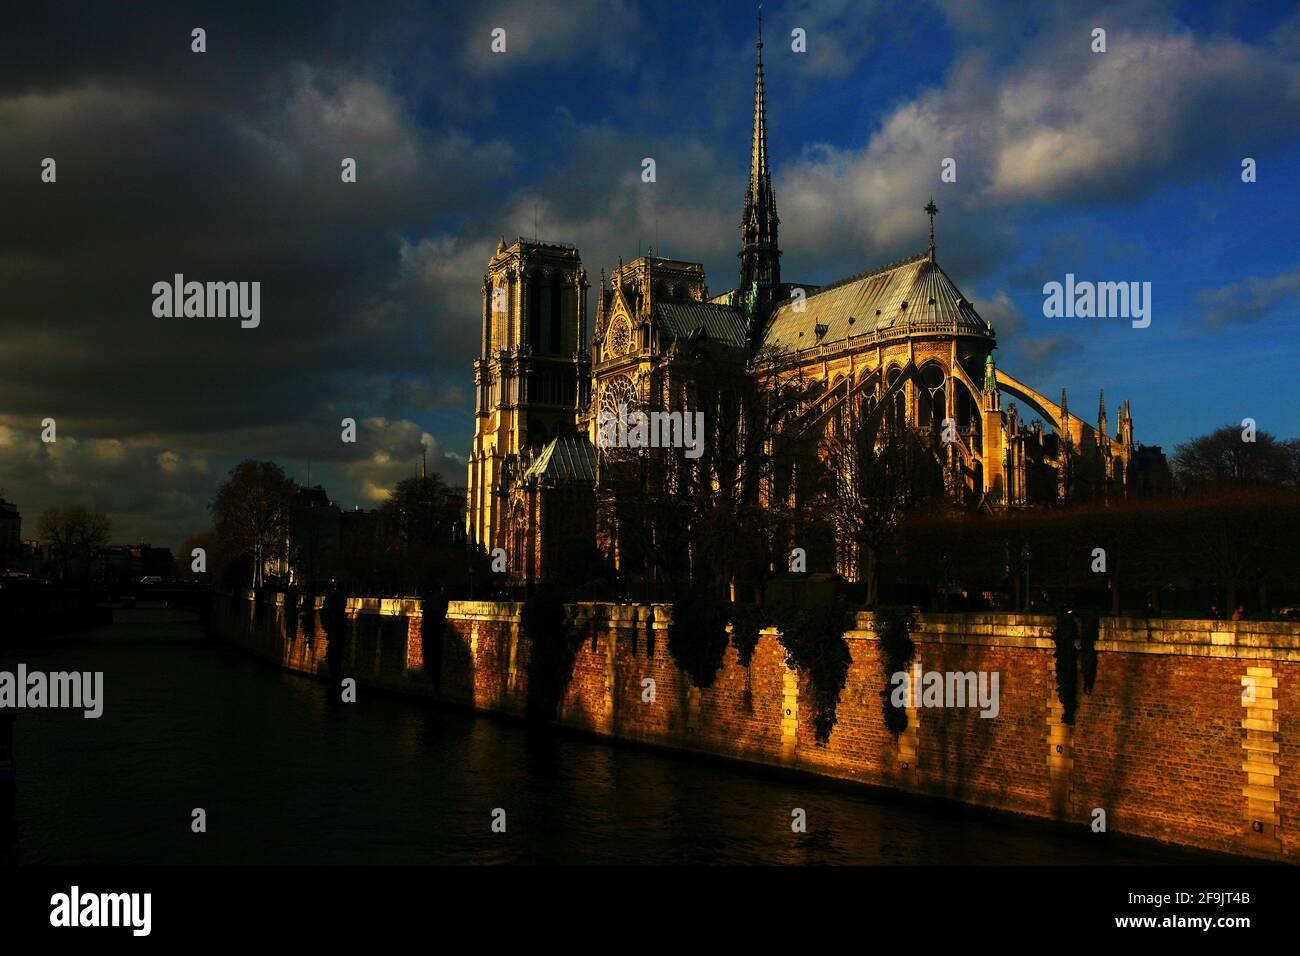 Parigi, Frankreich, Notre Dame, Blauer Himmel und beleuchtete Türme und Mauern vom Gotteshaus und Kirche Notre Dame a Parigi Foto Stock